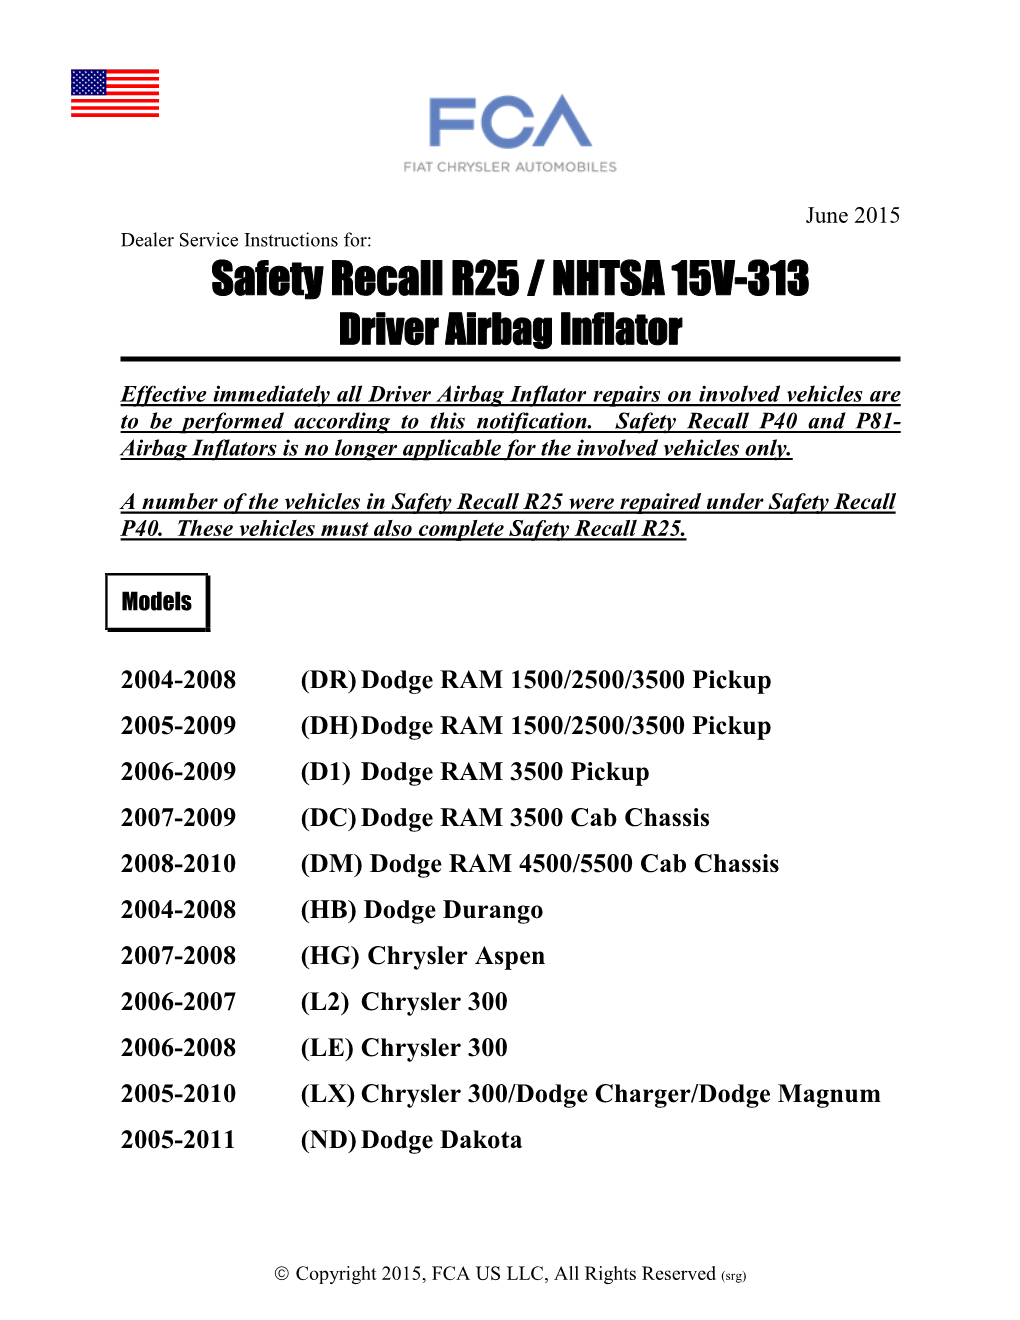 Safety Recall R25 / NHTSA 15V-313 Driver Airbag Inflator